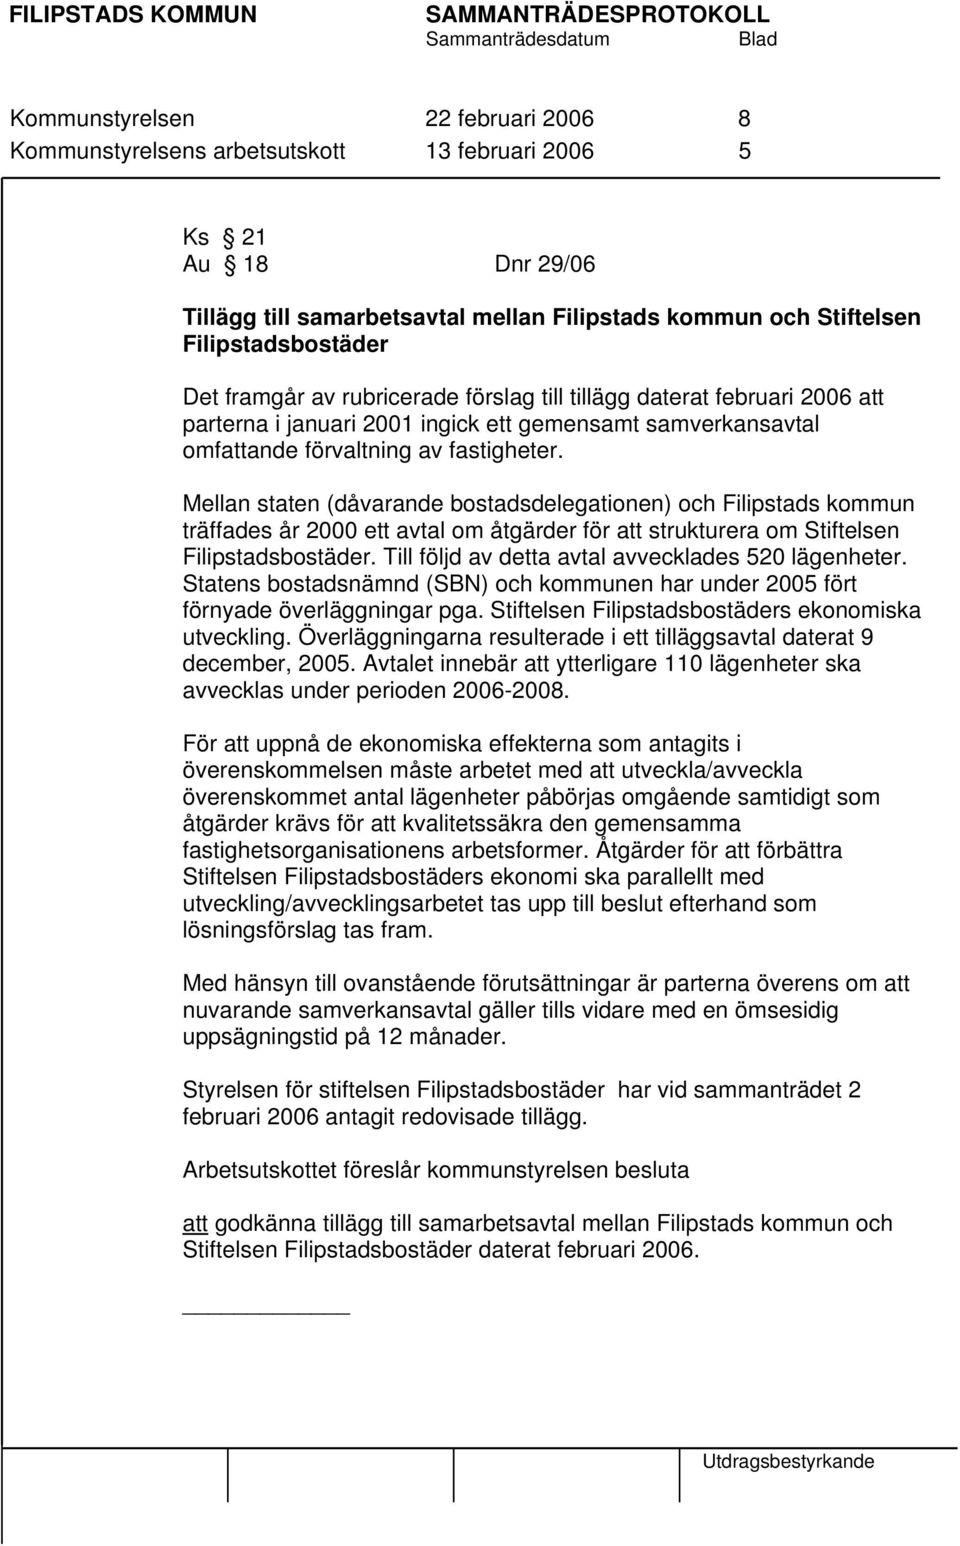 Mellan staten (dåvarande bostadsdelegationen) och Filipstads kommun träffades år 2000 ett avtal om åtgärder för att strukturera om Stiftelsen Filipstadsbostäder.